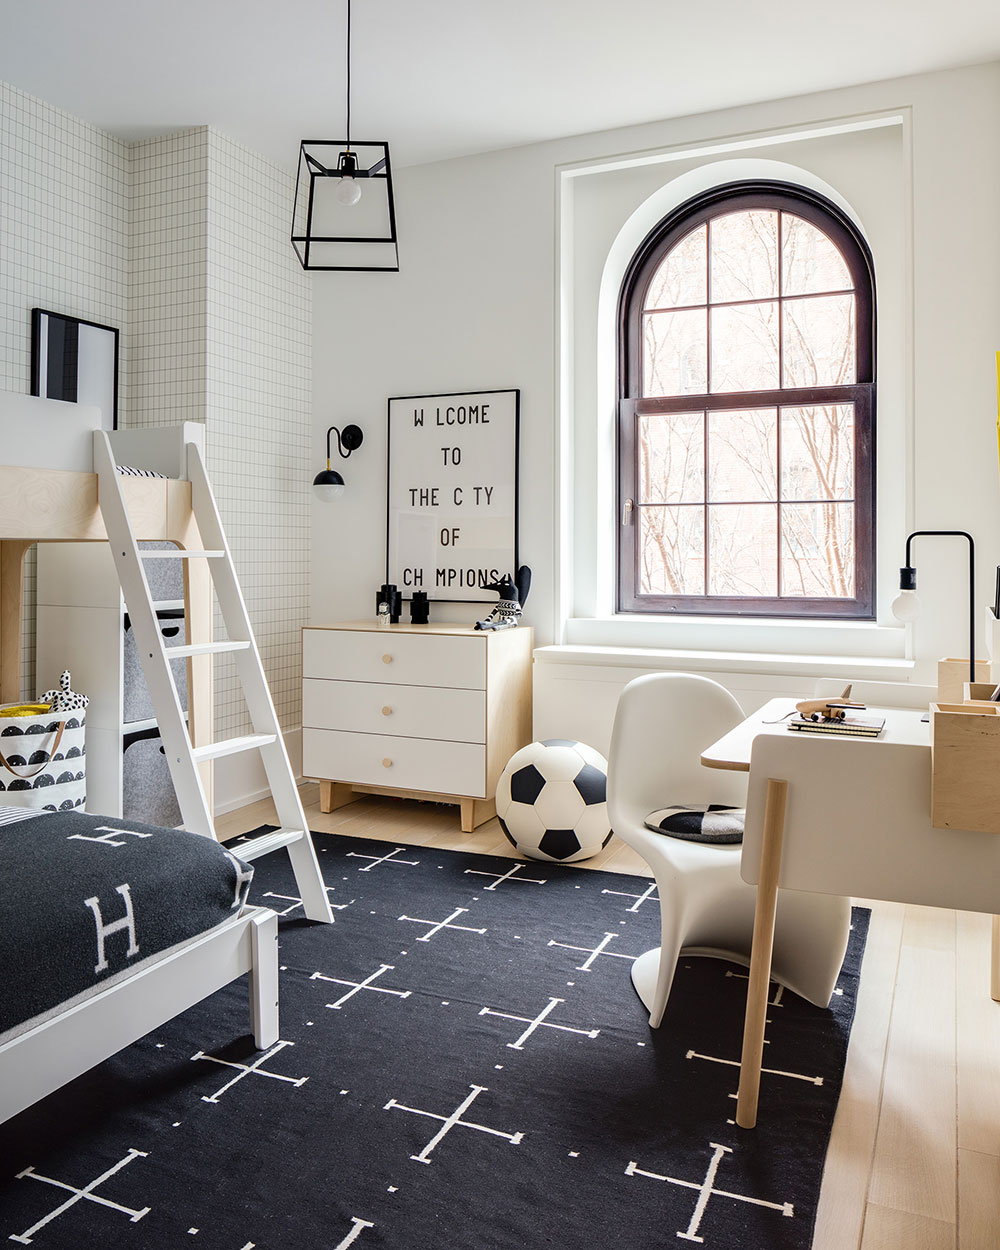 Как оформляют детские комнаты в современных квартирах Нью-Йорка